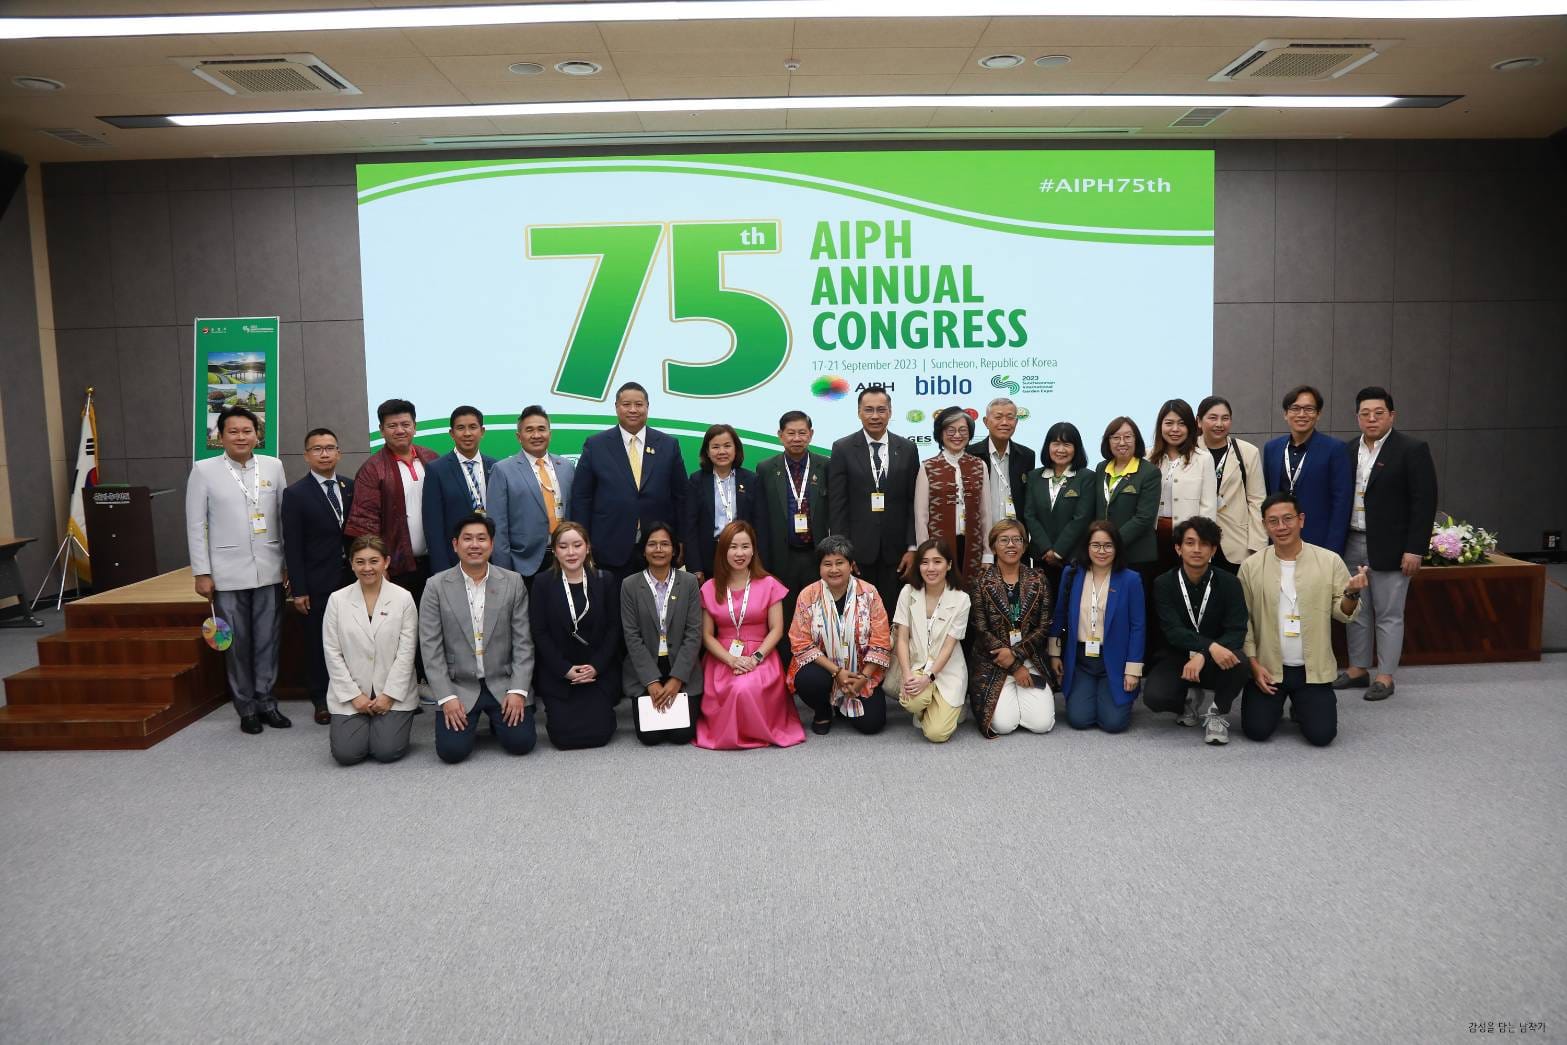 สำนักงานส่งเสริมการจัดประชุมและนิทรรศการ (องค์การมหาชน) สสปน. ได้เชิญสมาคมพืชสวนแห่งประเทศไทย เข้าร่วมประชุม 75th AIPH Annual Congress